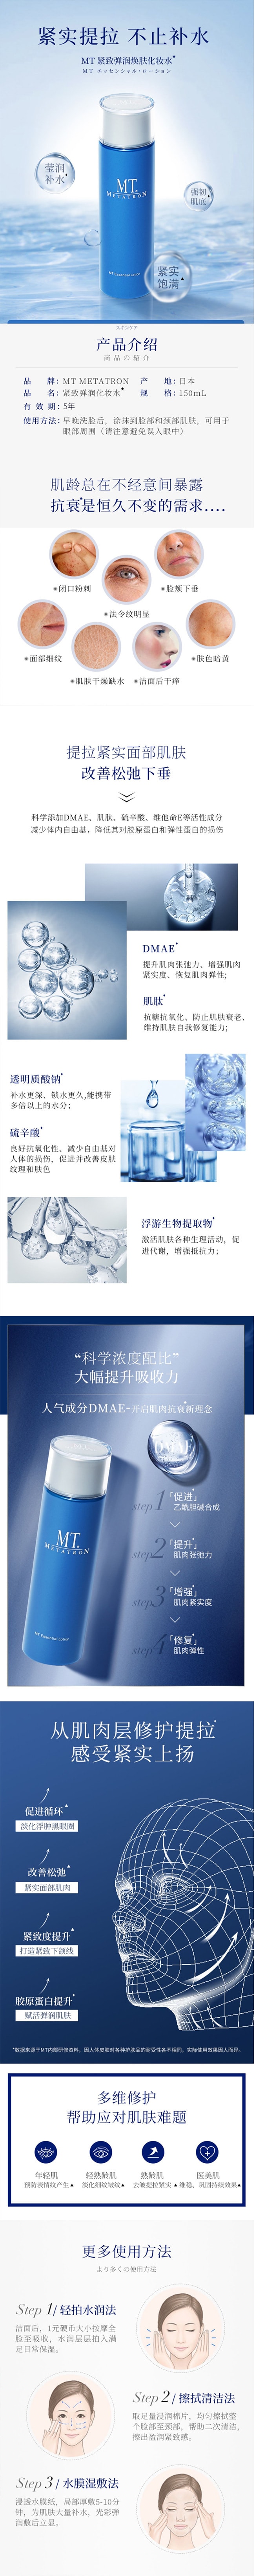 【日本直郵】MT METATRON 小藍瓶緊緻彈潤提拉抗老 貴婦護膚化妝水 150ml 李佳琦推薦